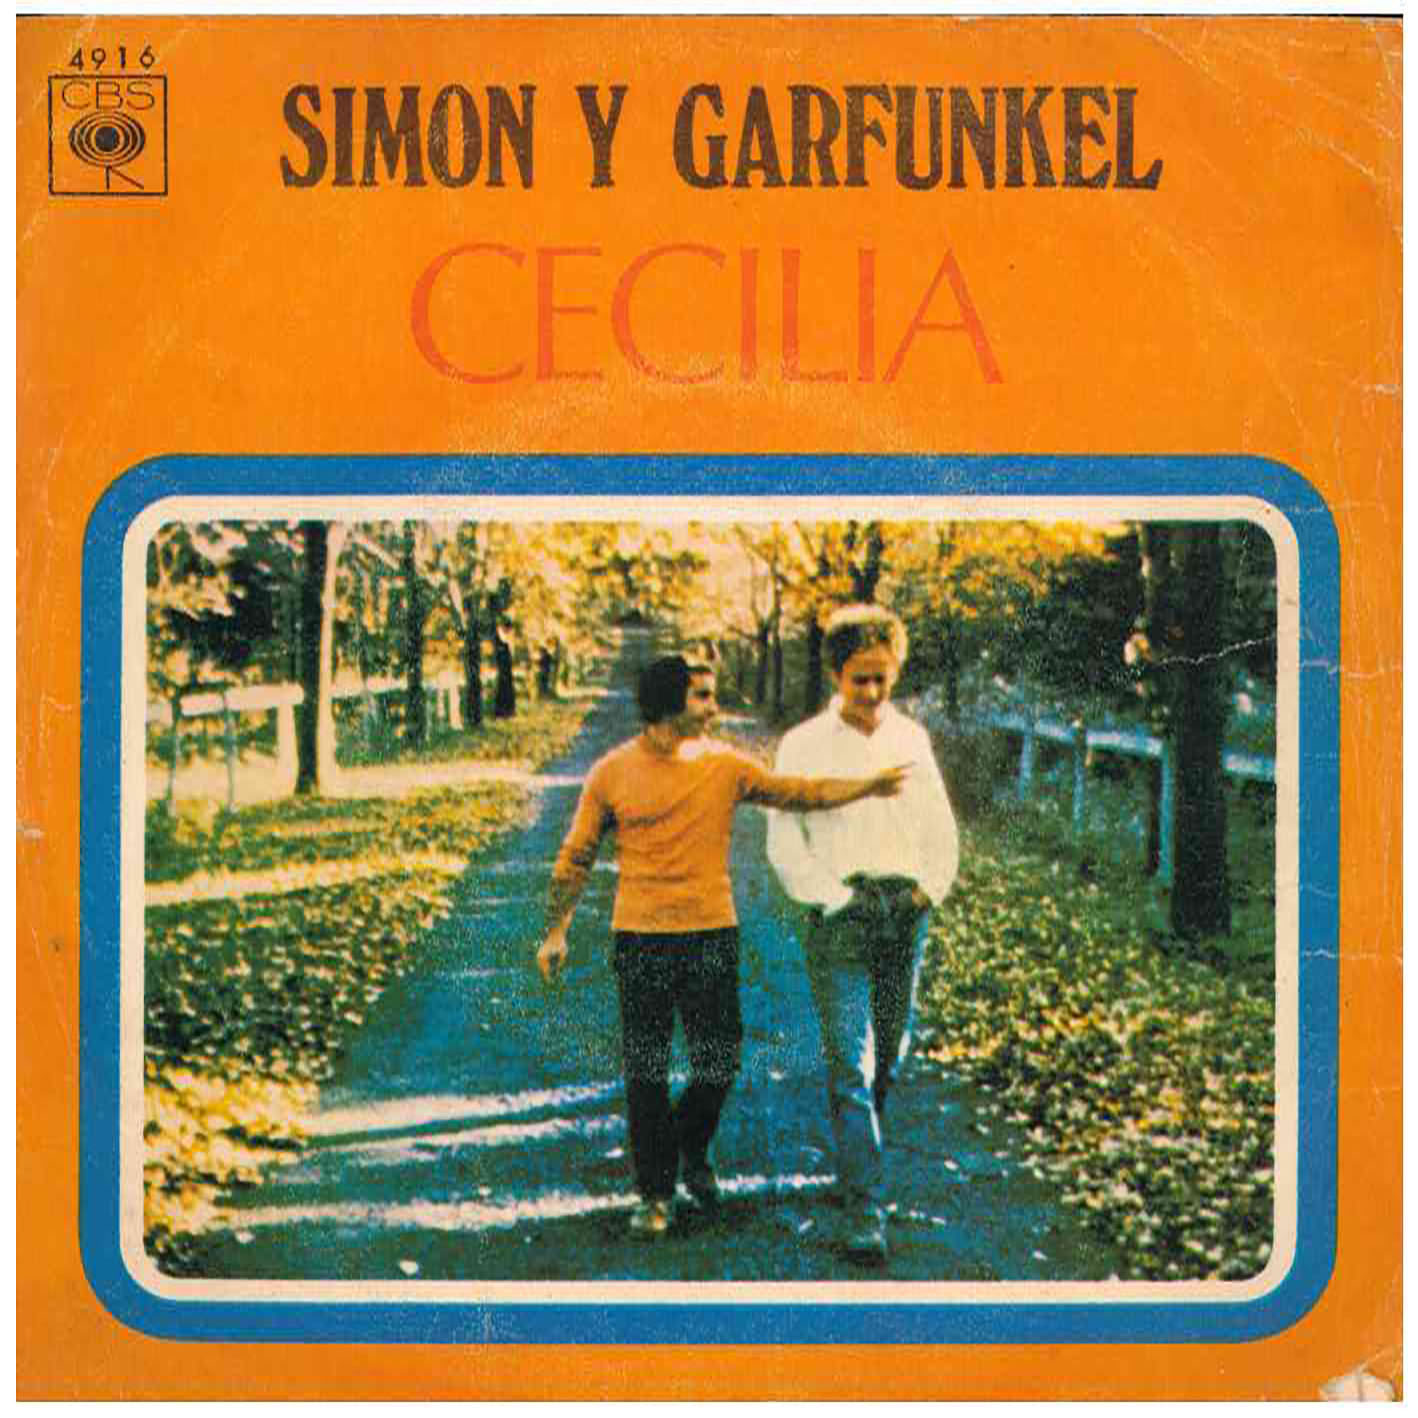 Simon Y Garfunkel – Cecilia